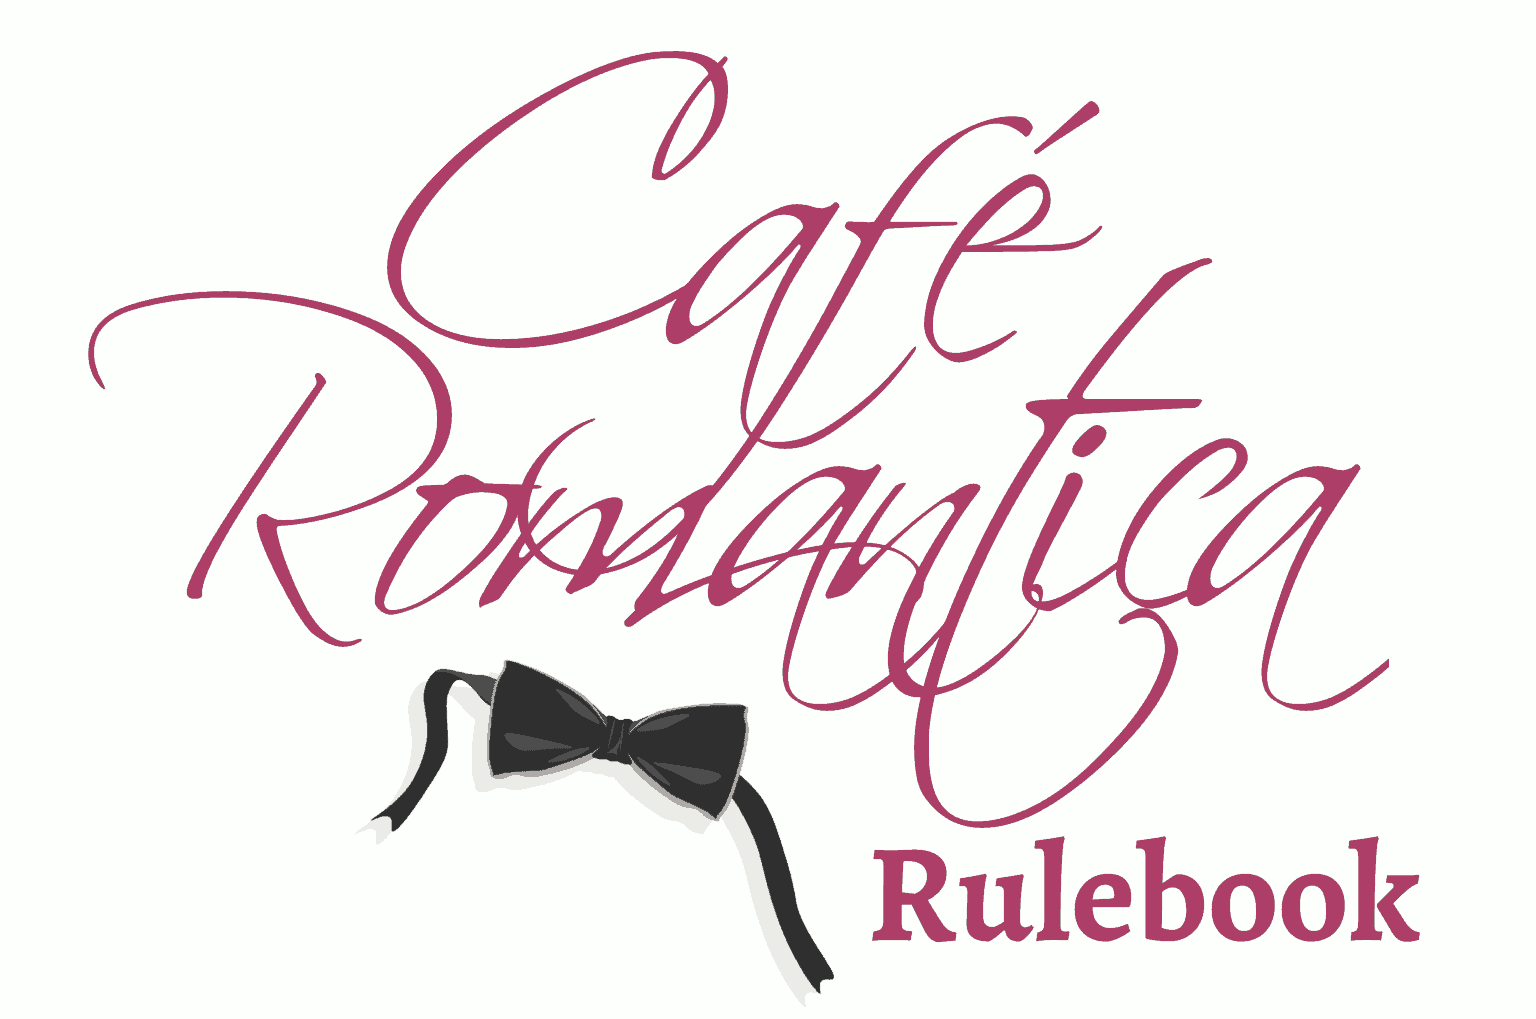 Café Romantica rulebook title